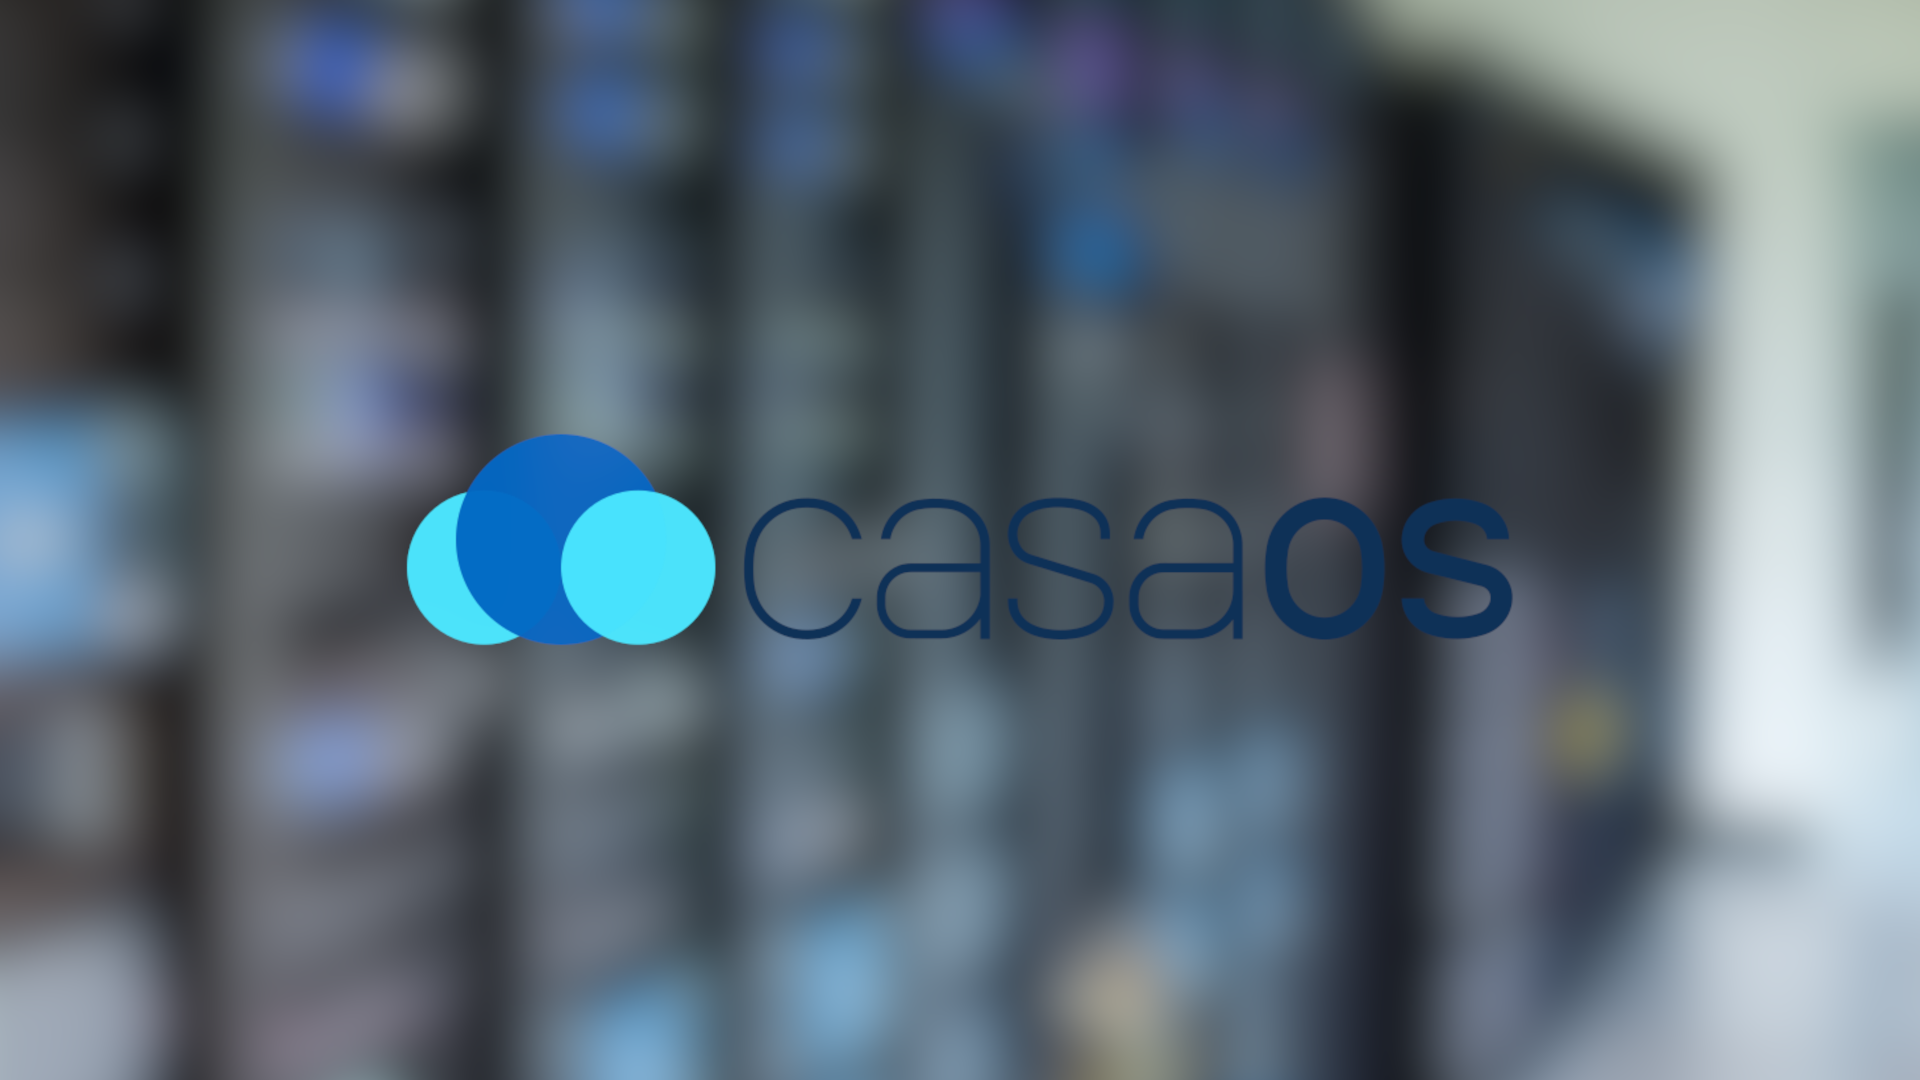 CasaOS | Docker mit WebUI, perfekt fürs kleine Homelab